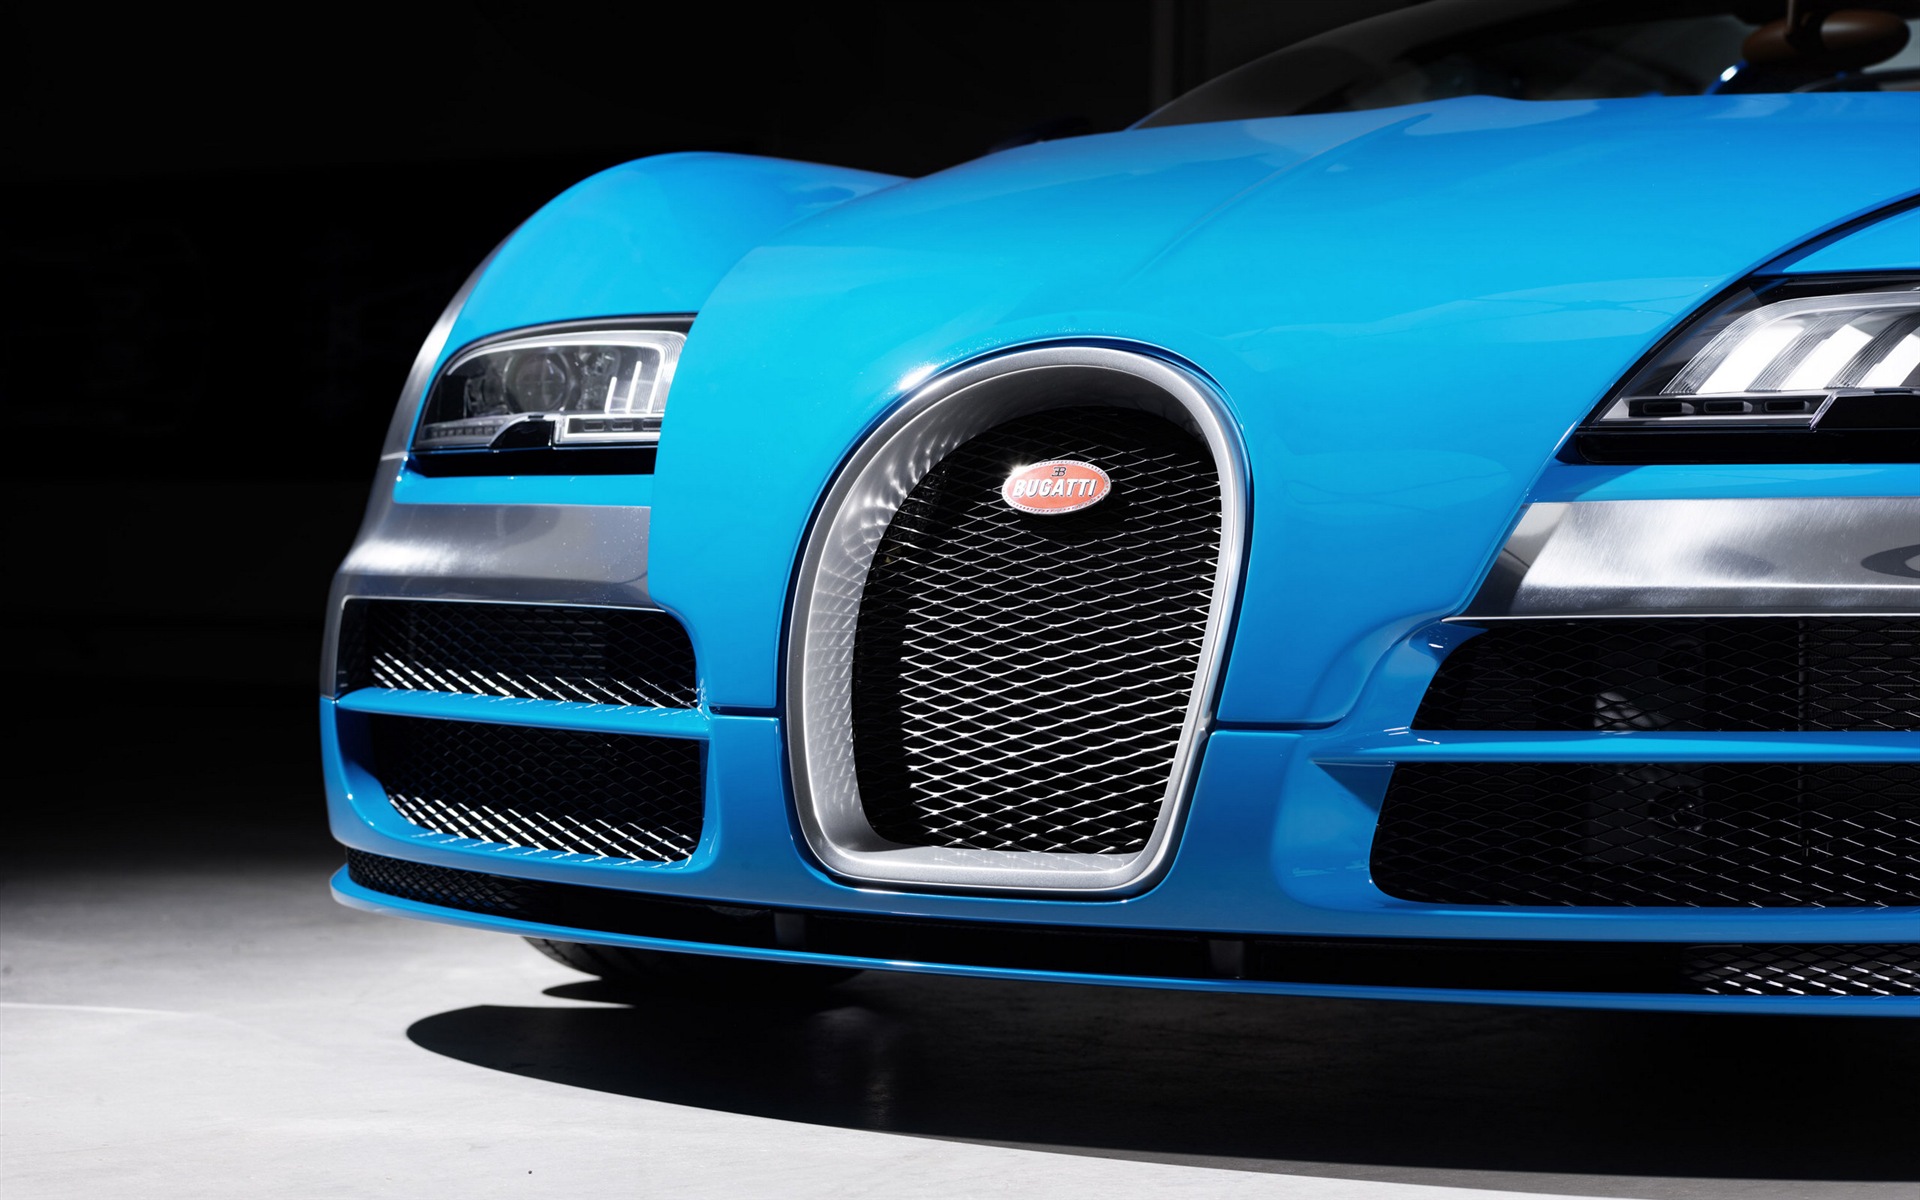 2013 Bugatti Veyron 16.4 Grand Sport Vitesse supercar fondos de pantalla de alta definición #3 - 1920x1200